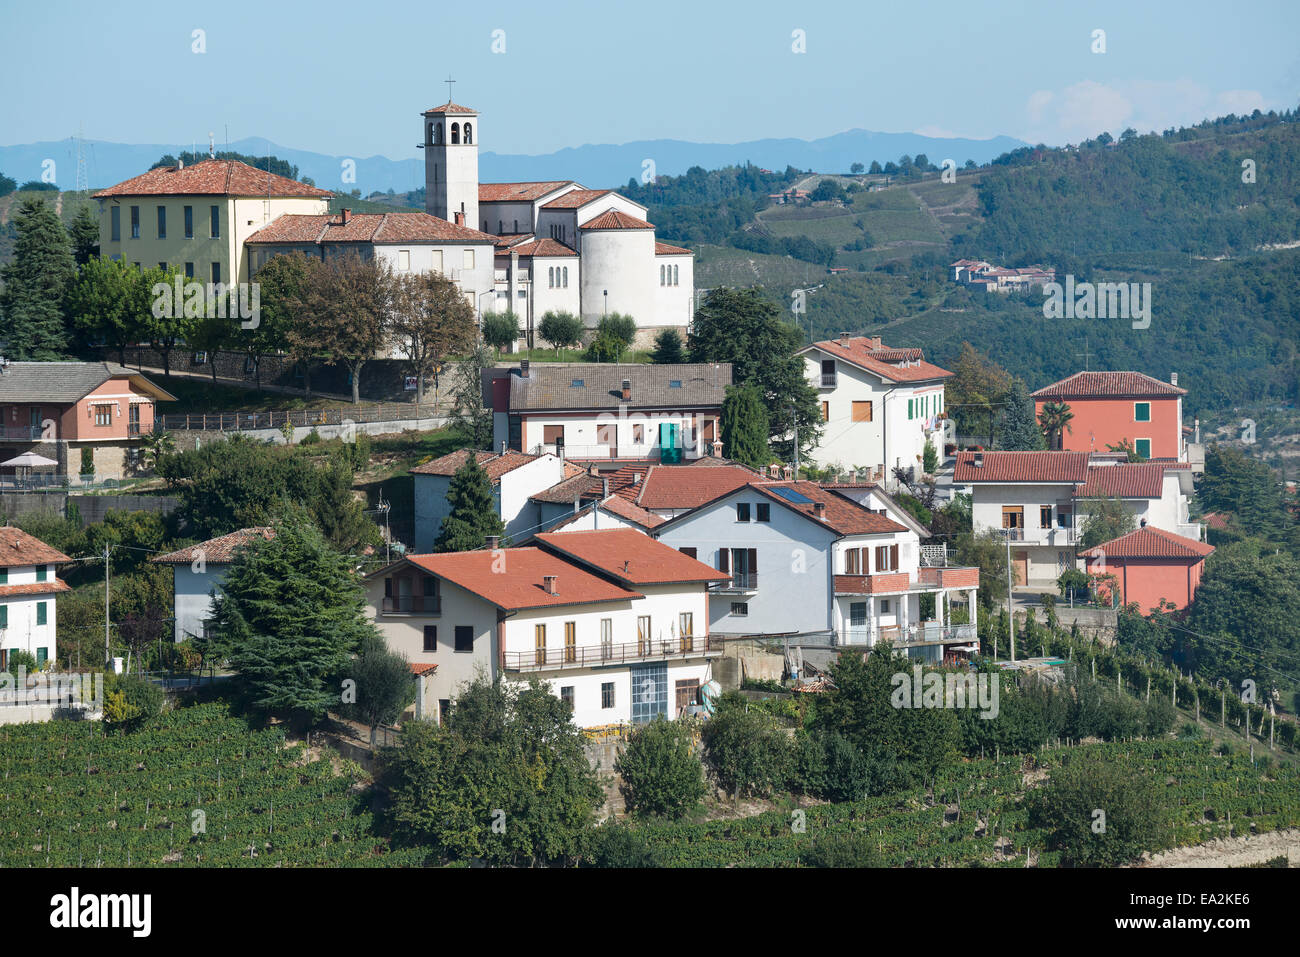 Italie,panorama de vignobles du Piémont : Langhe-Roero et Monferrato sur la Liste du patrimoine mondial de l'UNESCO.Le village de Camo Banque D'Images